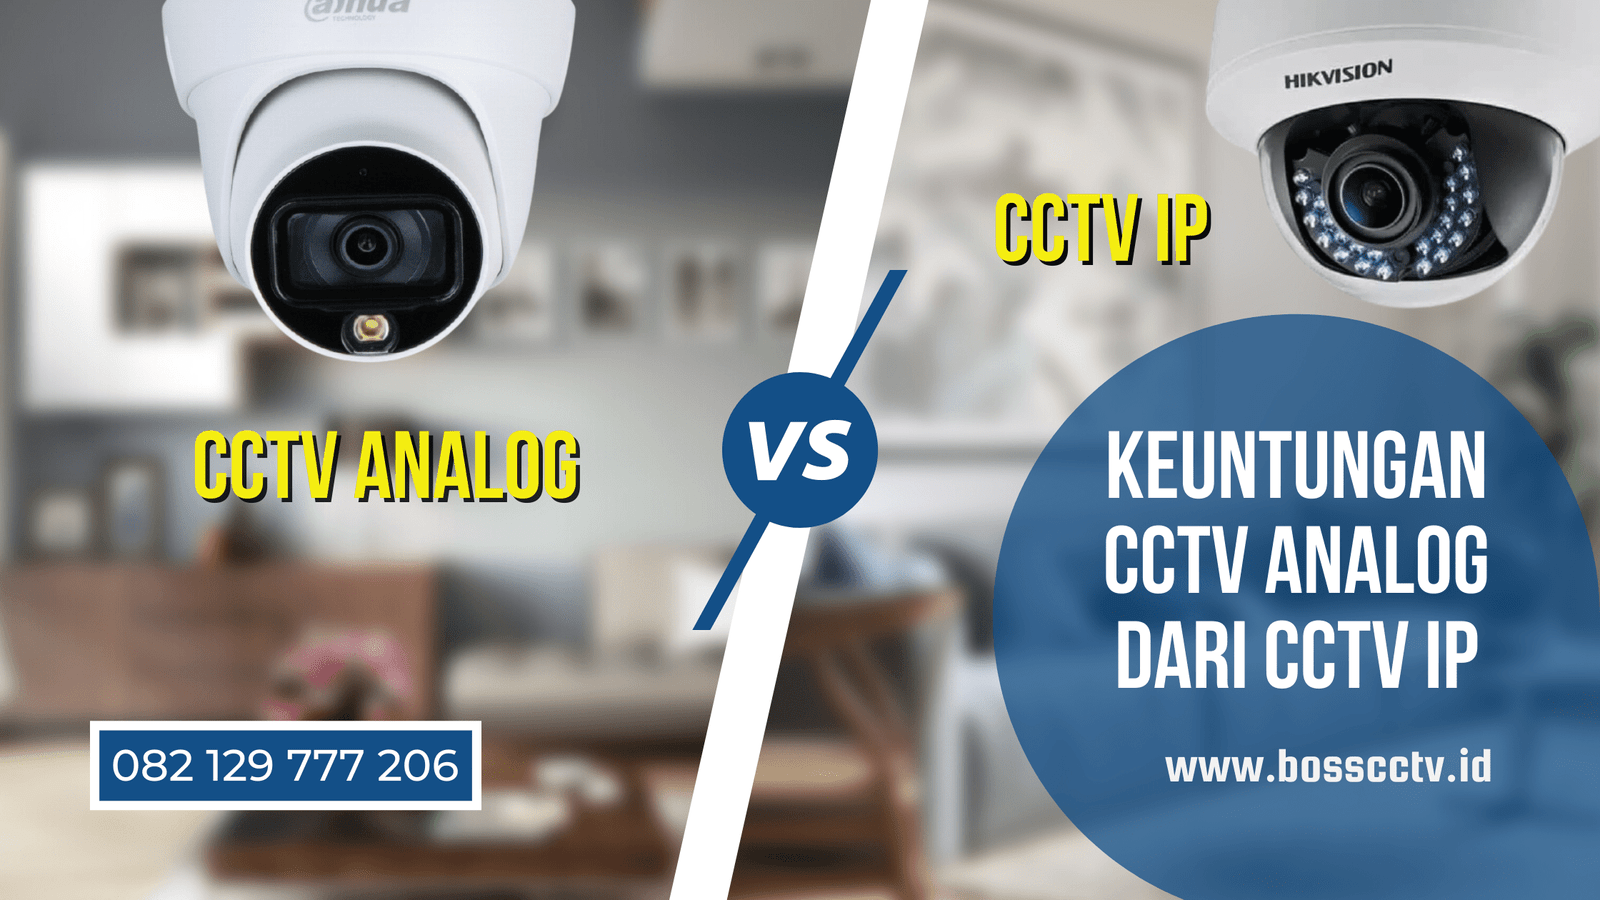 Keuntungan CCTV Analog dari CCTV IP